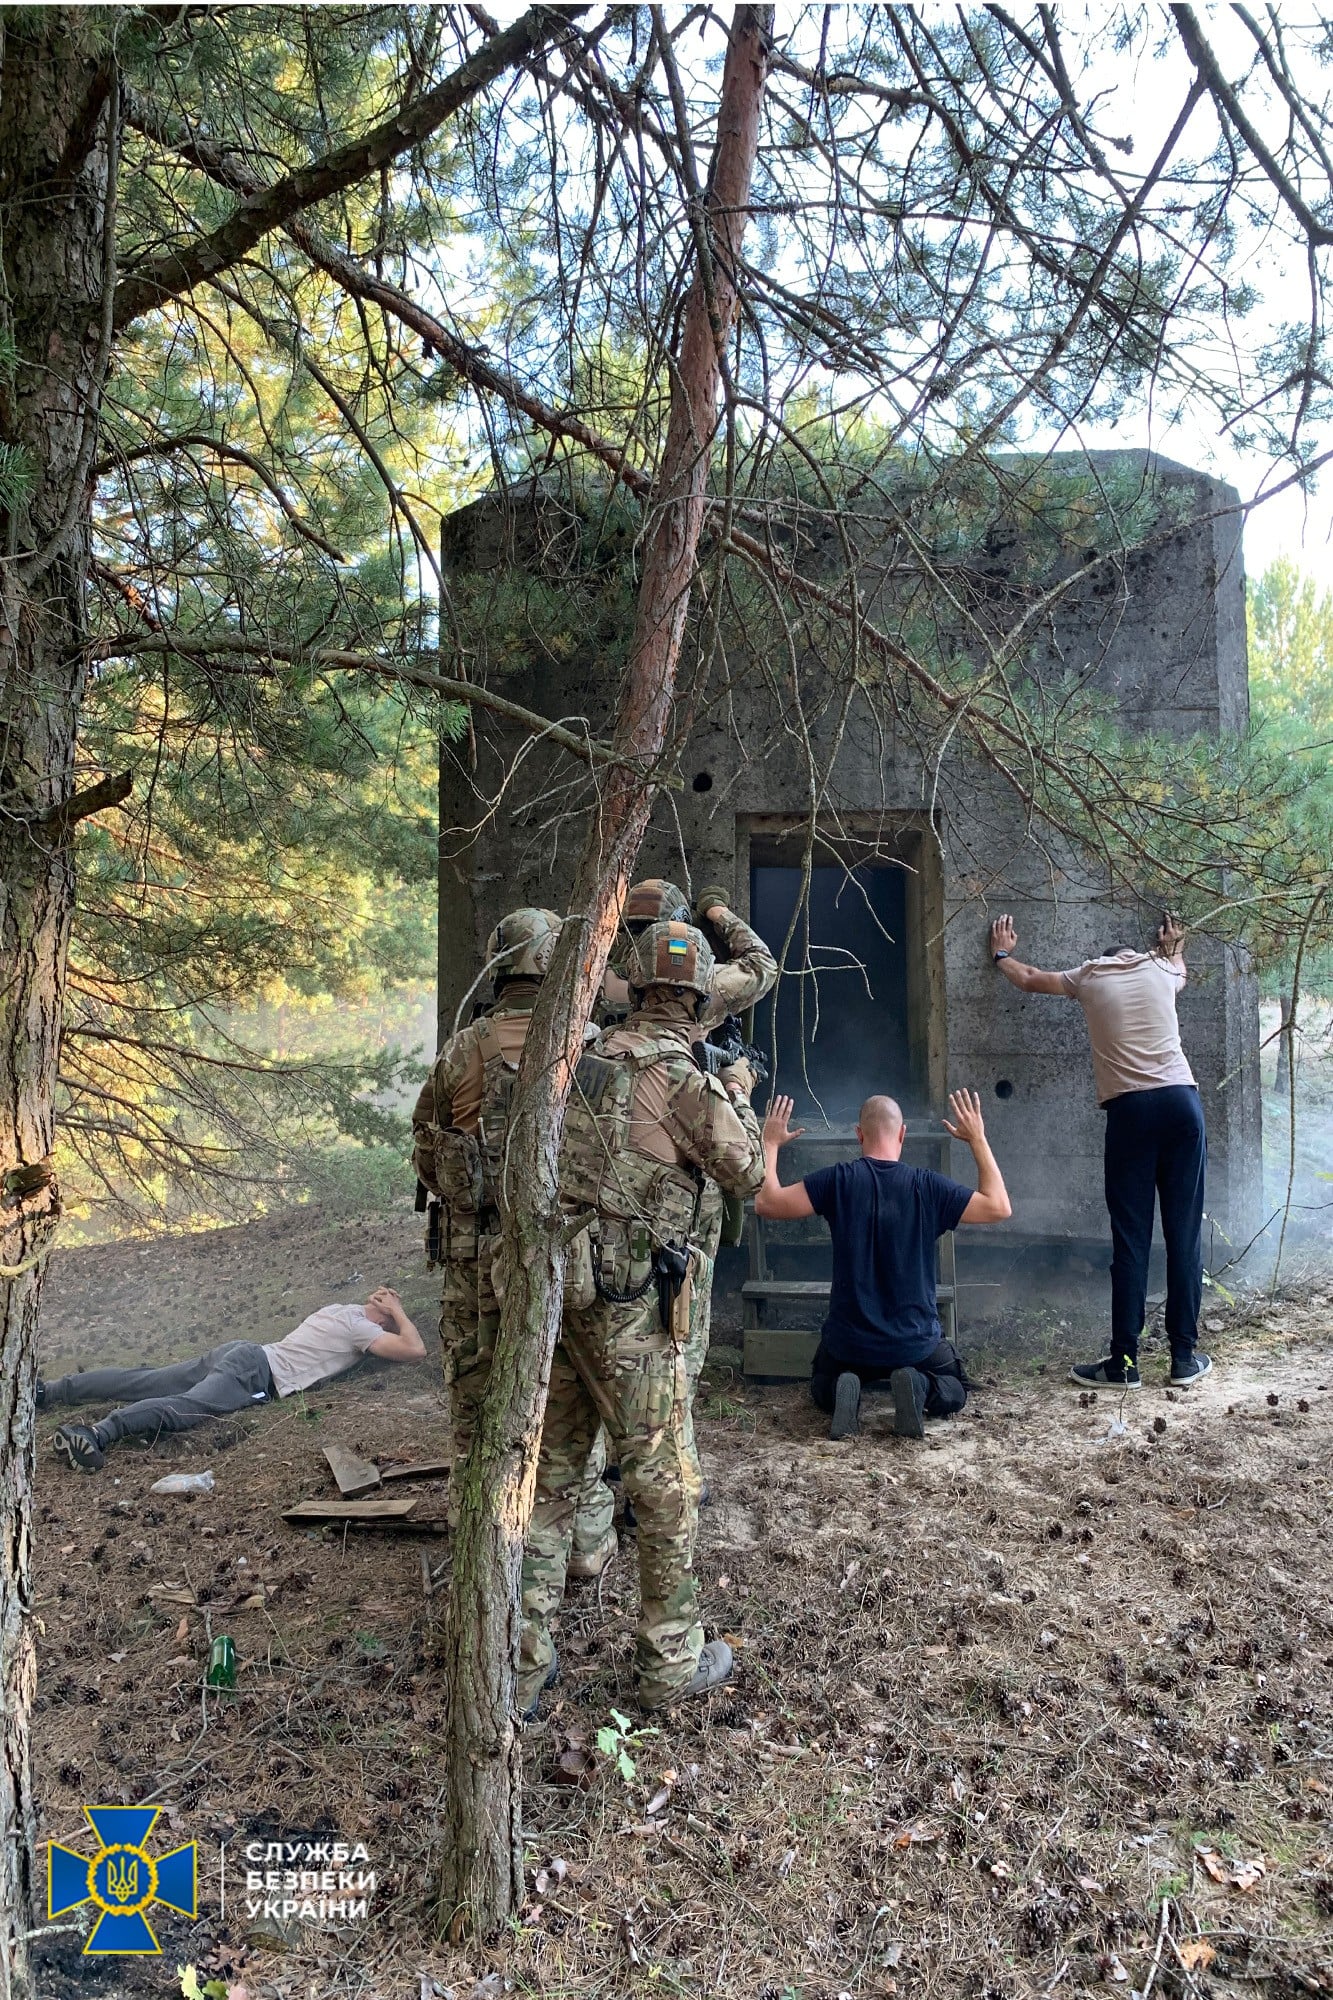 СБУ провела антитеррористические учения на границе с Беларусью. Скриншот фейсбук-сообщения